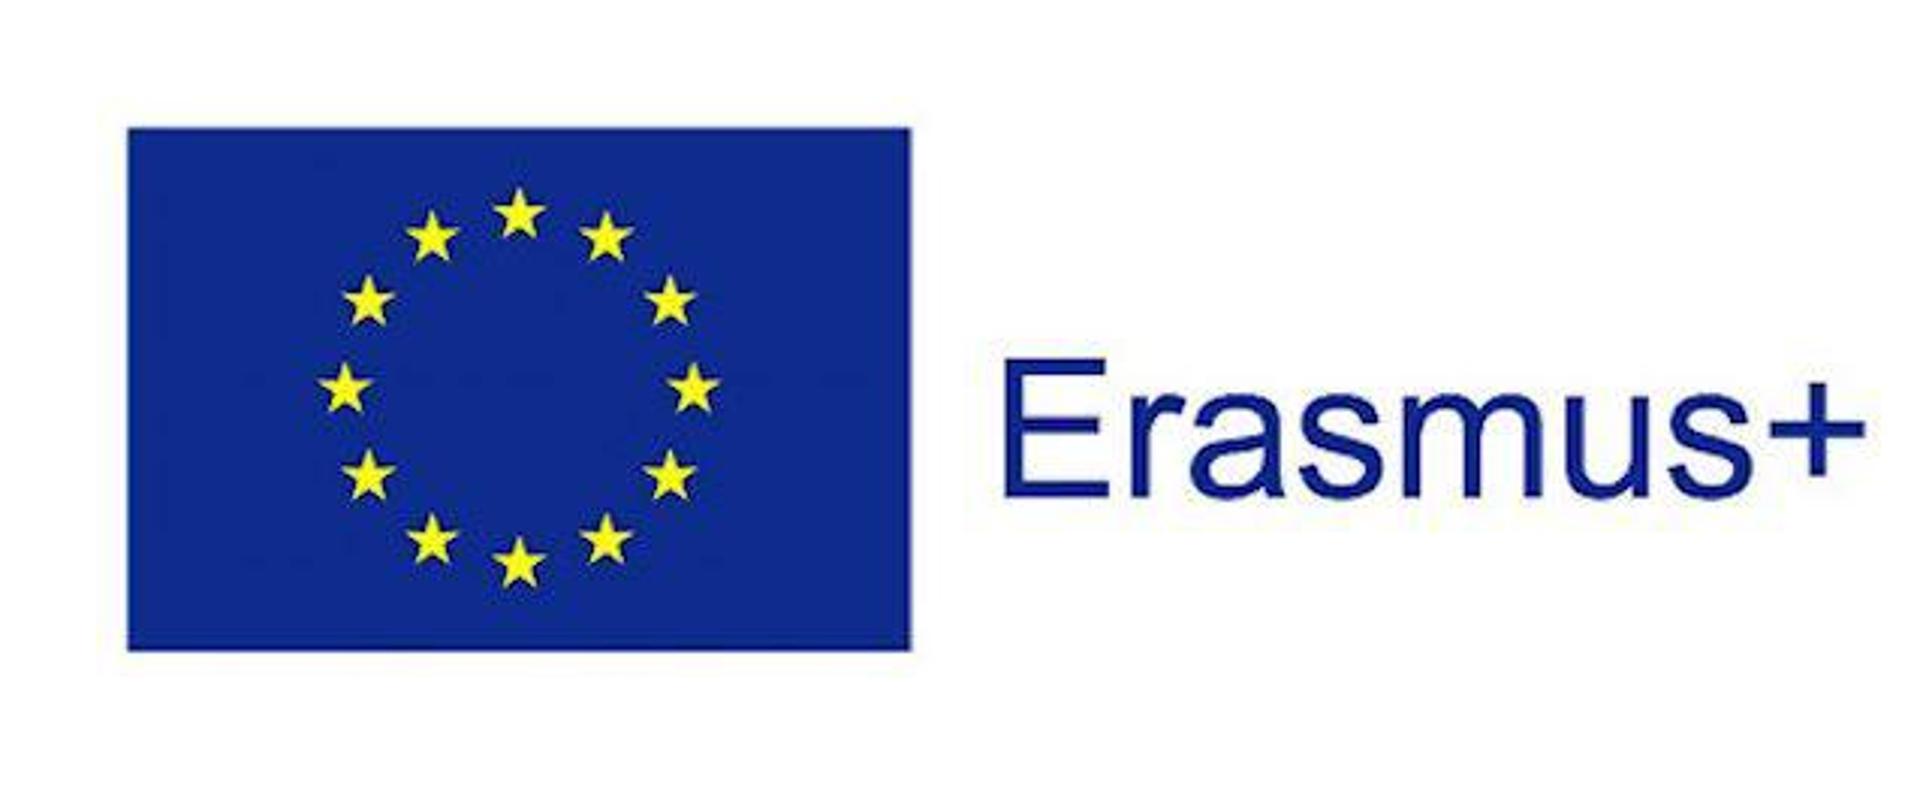 Flaga unii europejskiej i niebieskim kolorem napis erasmus+